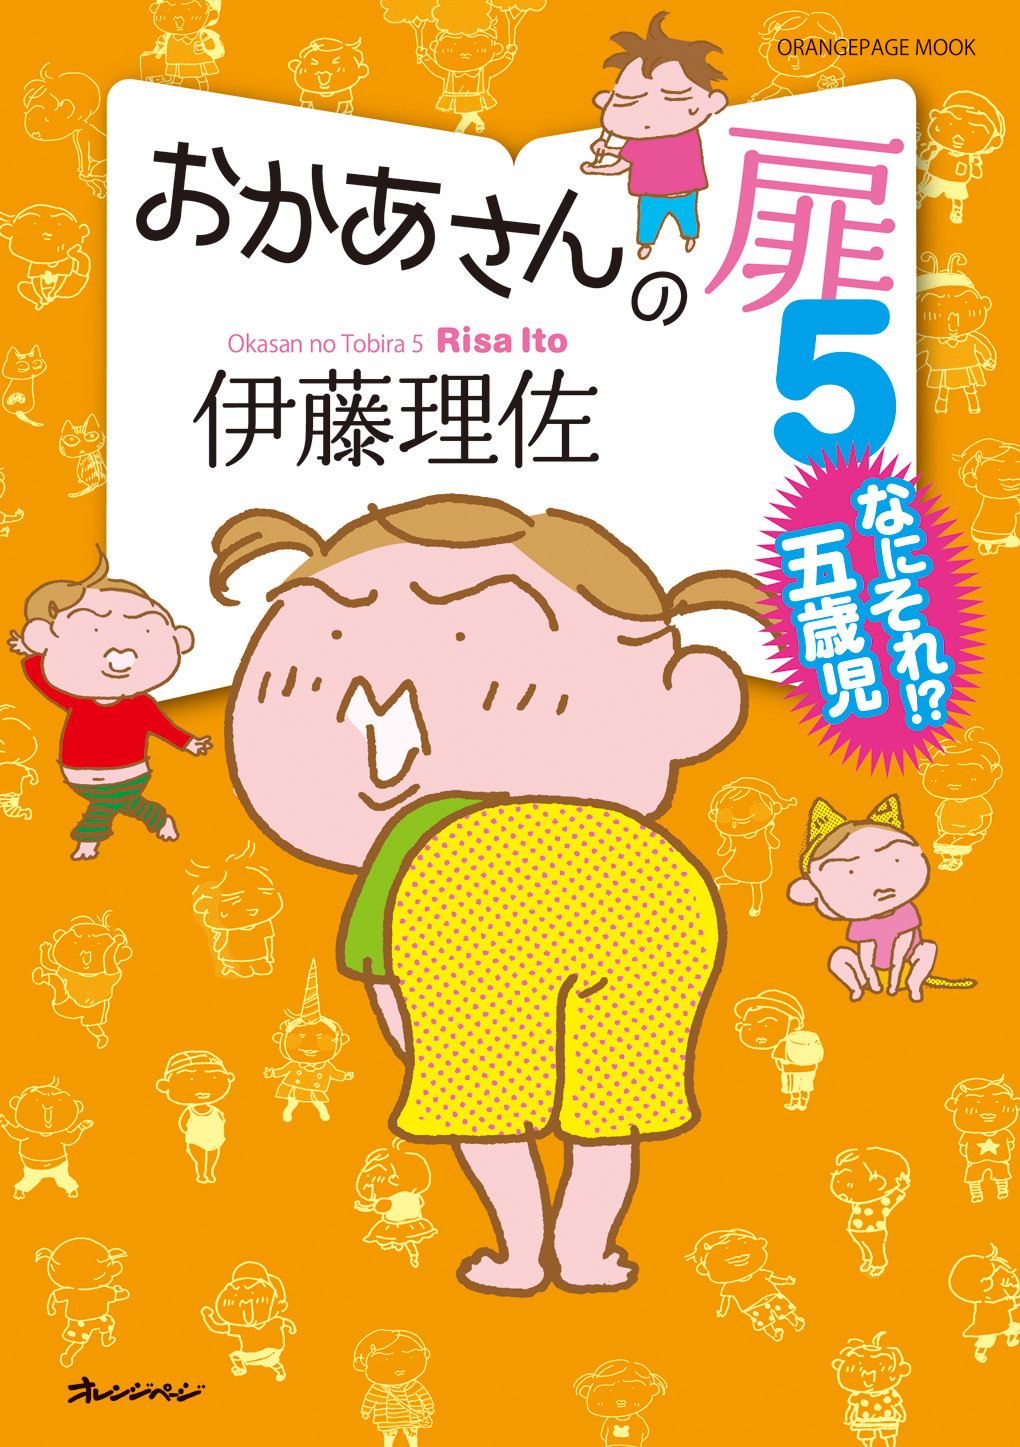 人気漫画家 伊藤理佐の爆笑ファミリーコミック第5弾 おかあさんの扉5 なにそれ 五歳児 株式会社オレンジページのプレスリリース